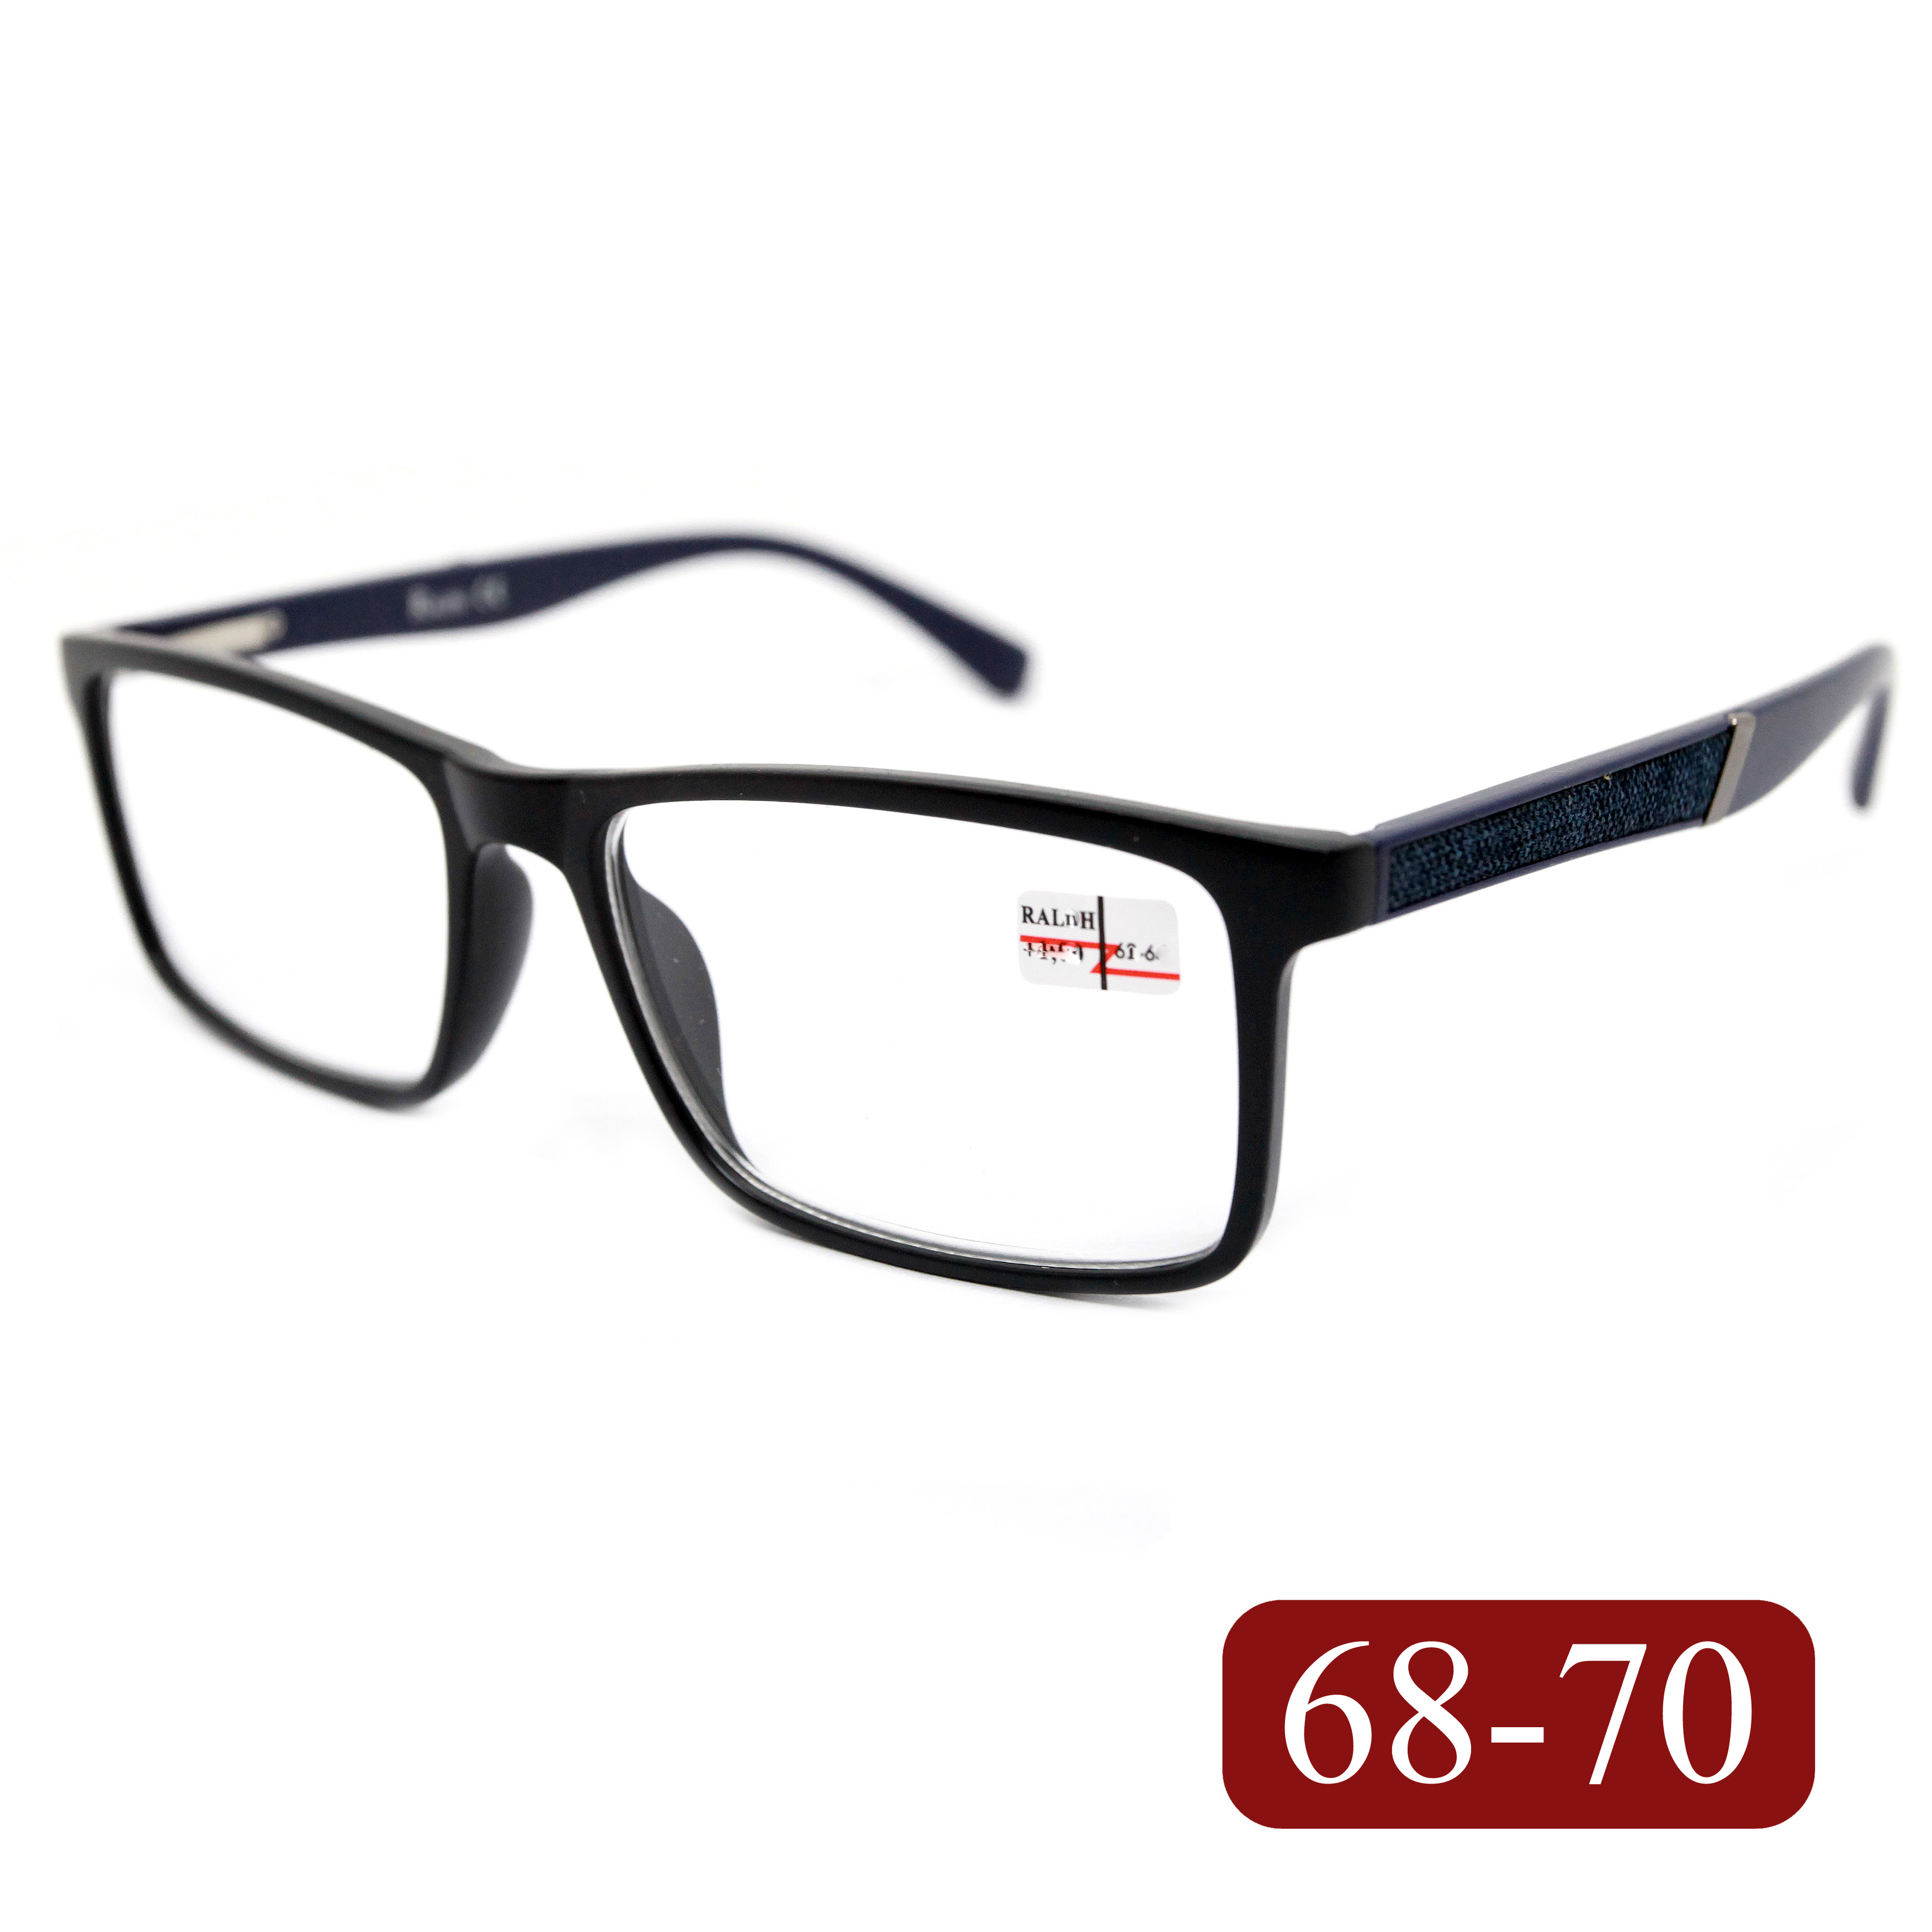 Готовые очки RALPH 0682 +3,50, без футляра, черно-синий, РЦ 68-70